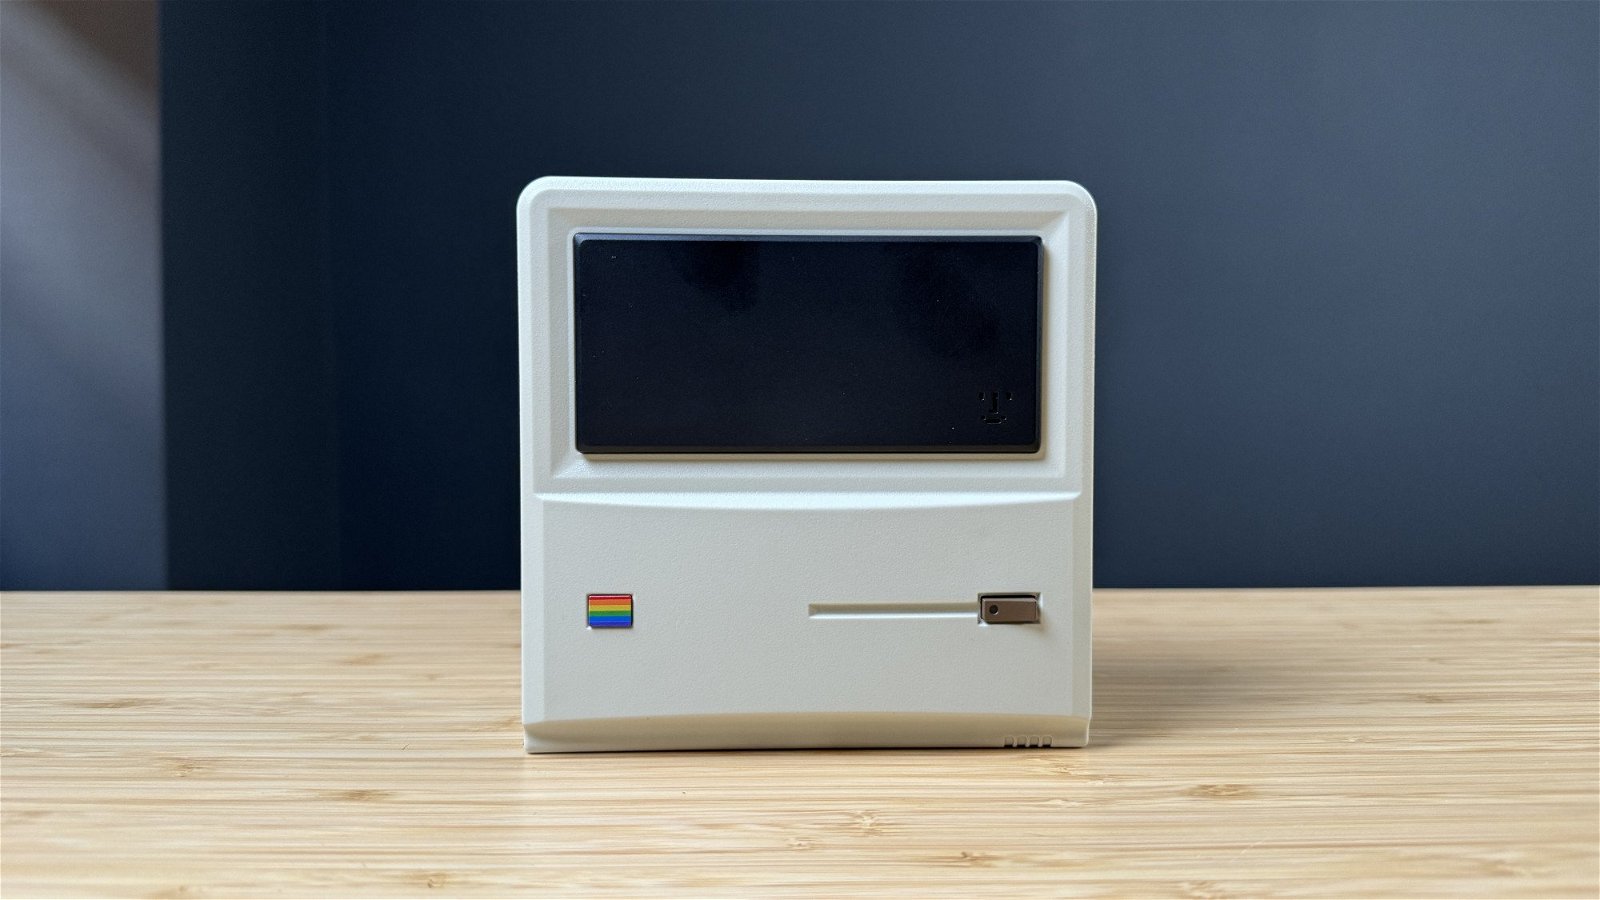 Immagine di Ayaneo Retro PC AM01, il mini computer che sembra un vecchio Macintosh | Test & Recensione